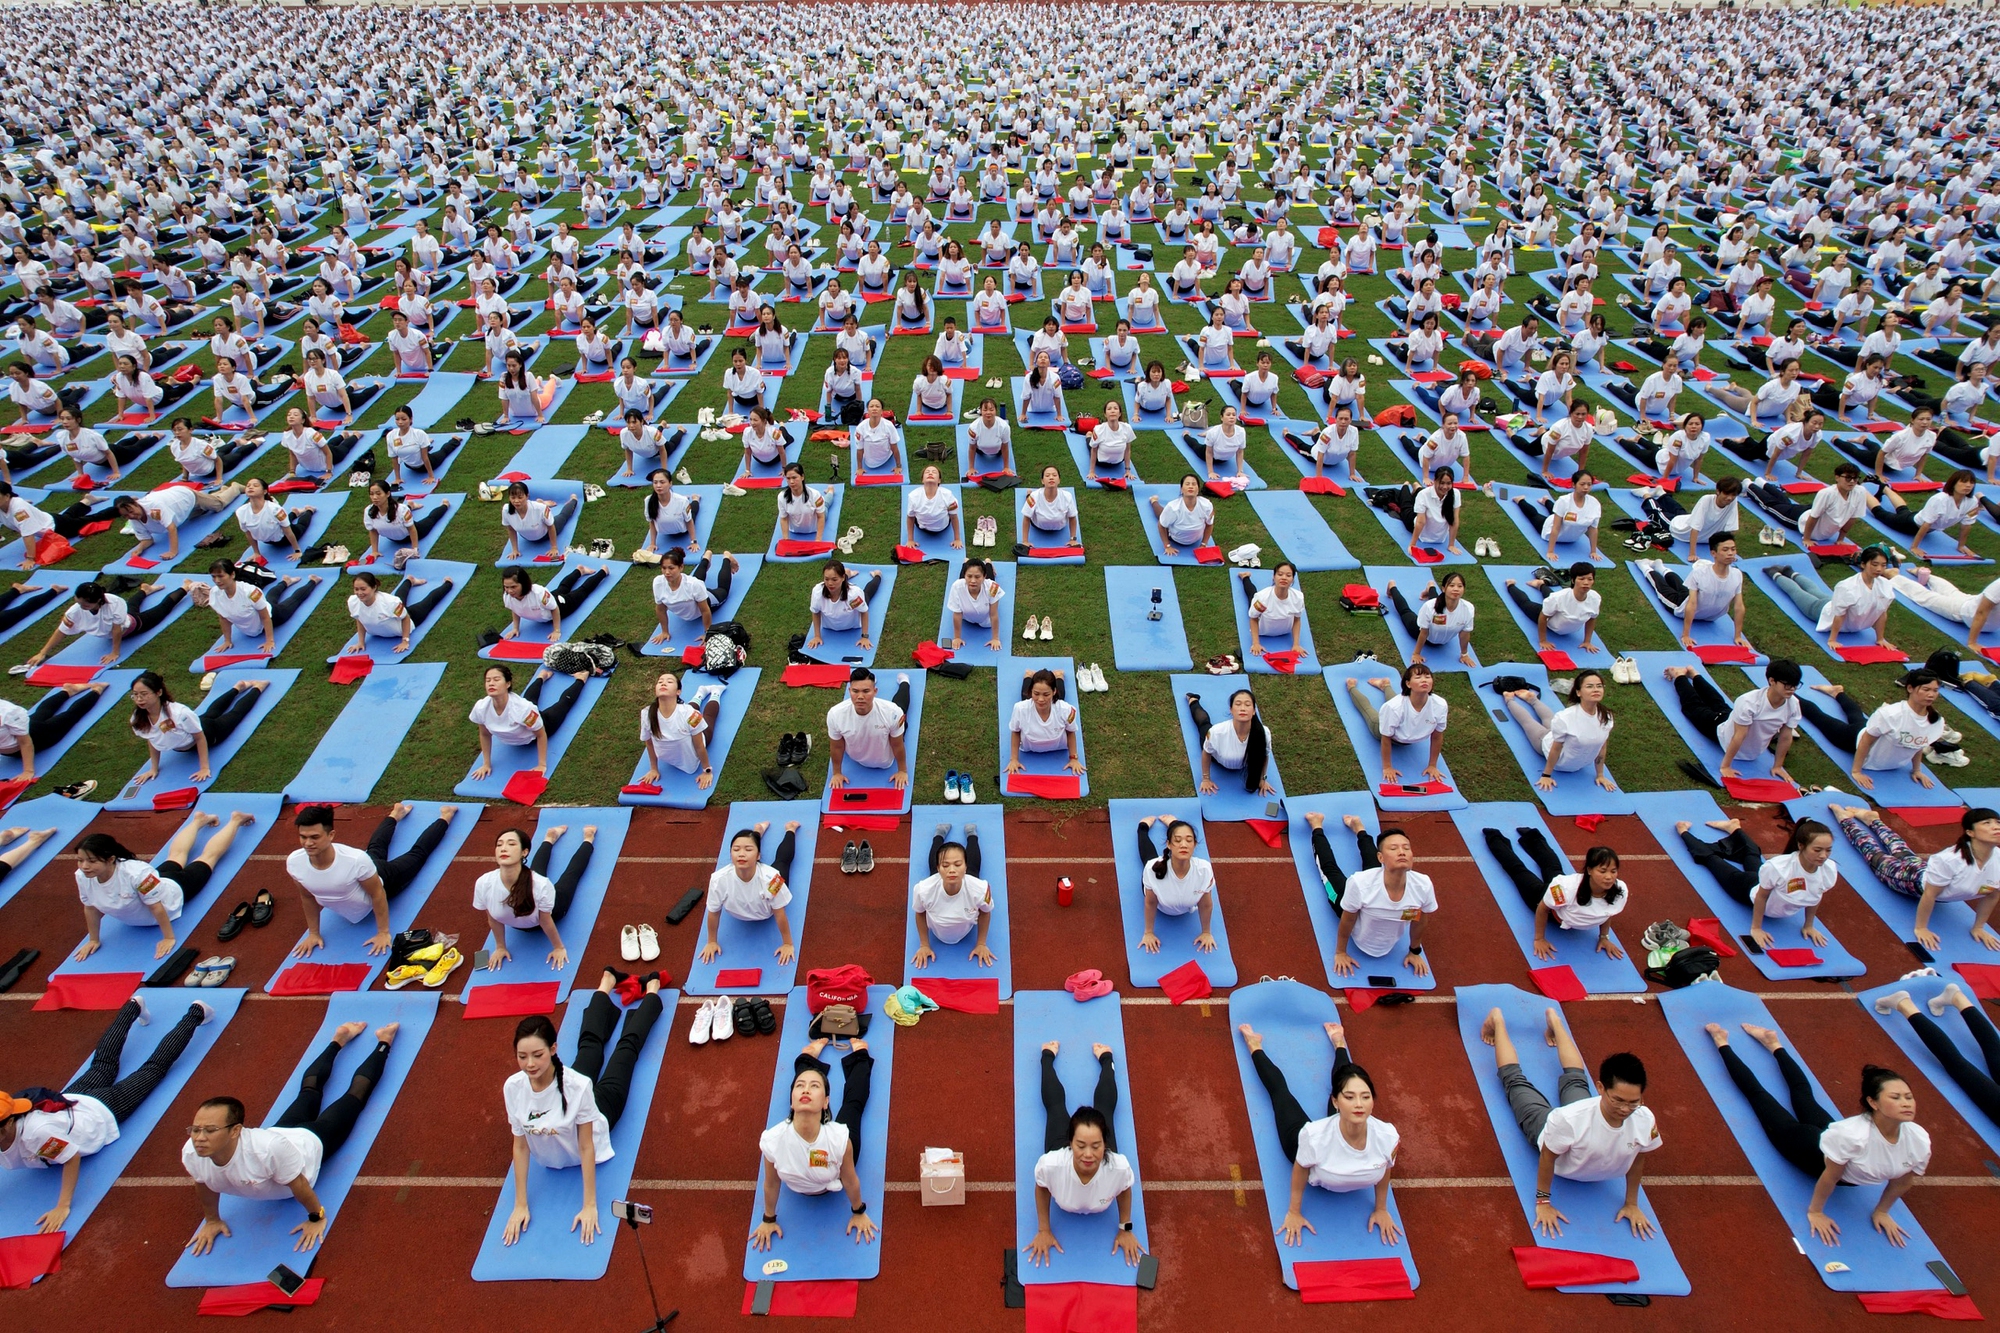 Dàn hoa hậu tham gia đồng diễn yoga, xếp hình lá cờ Tổ quốc lập kỷ lục - Ảnh 1.